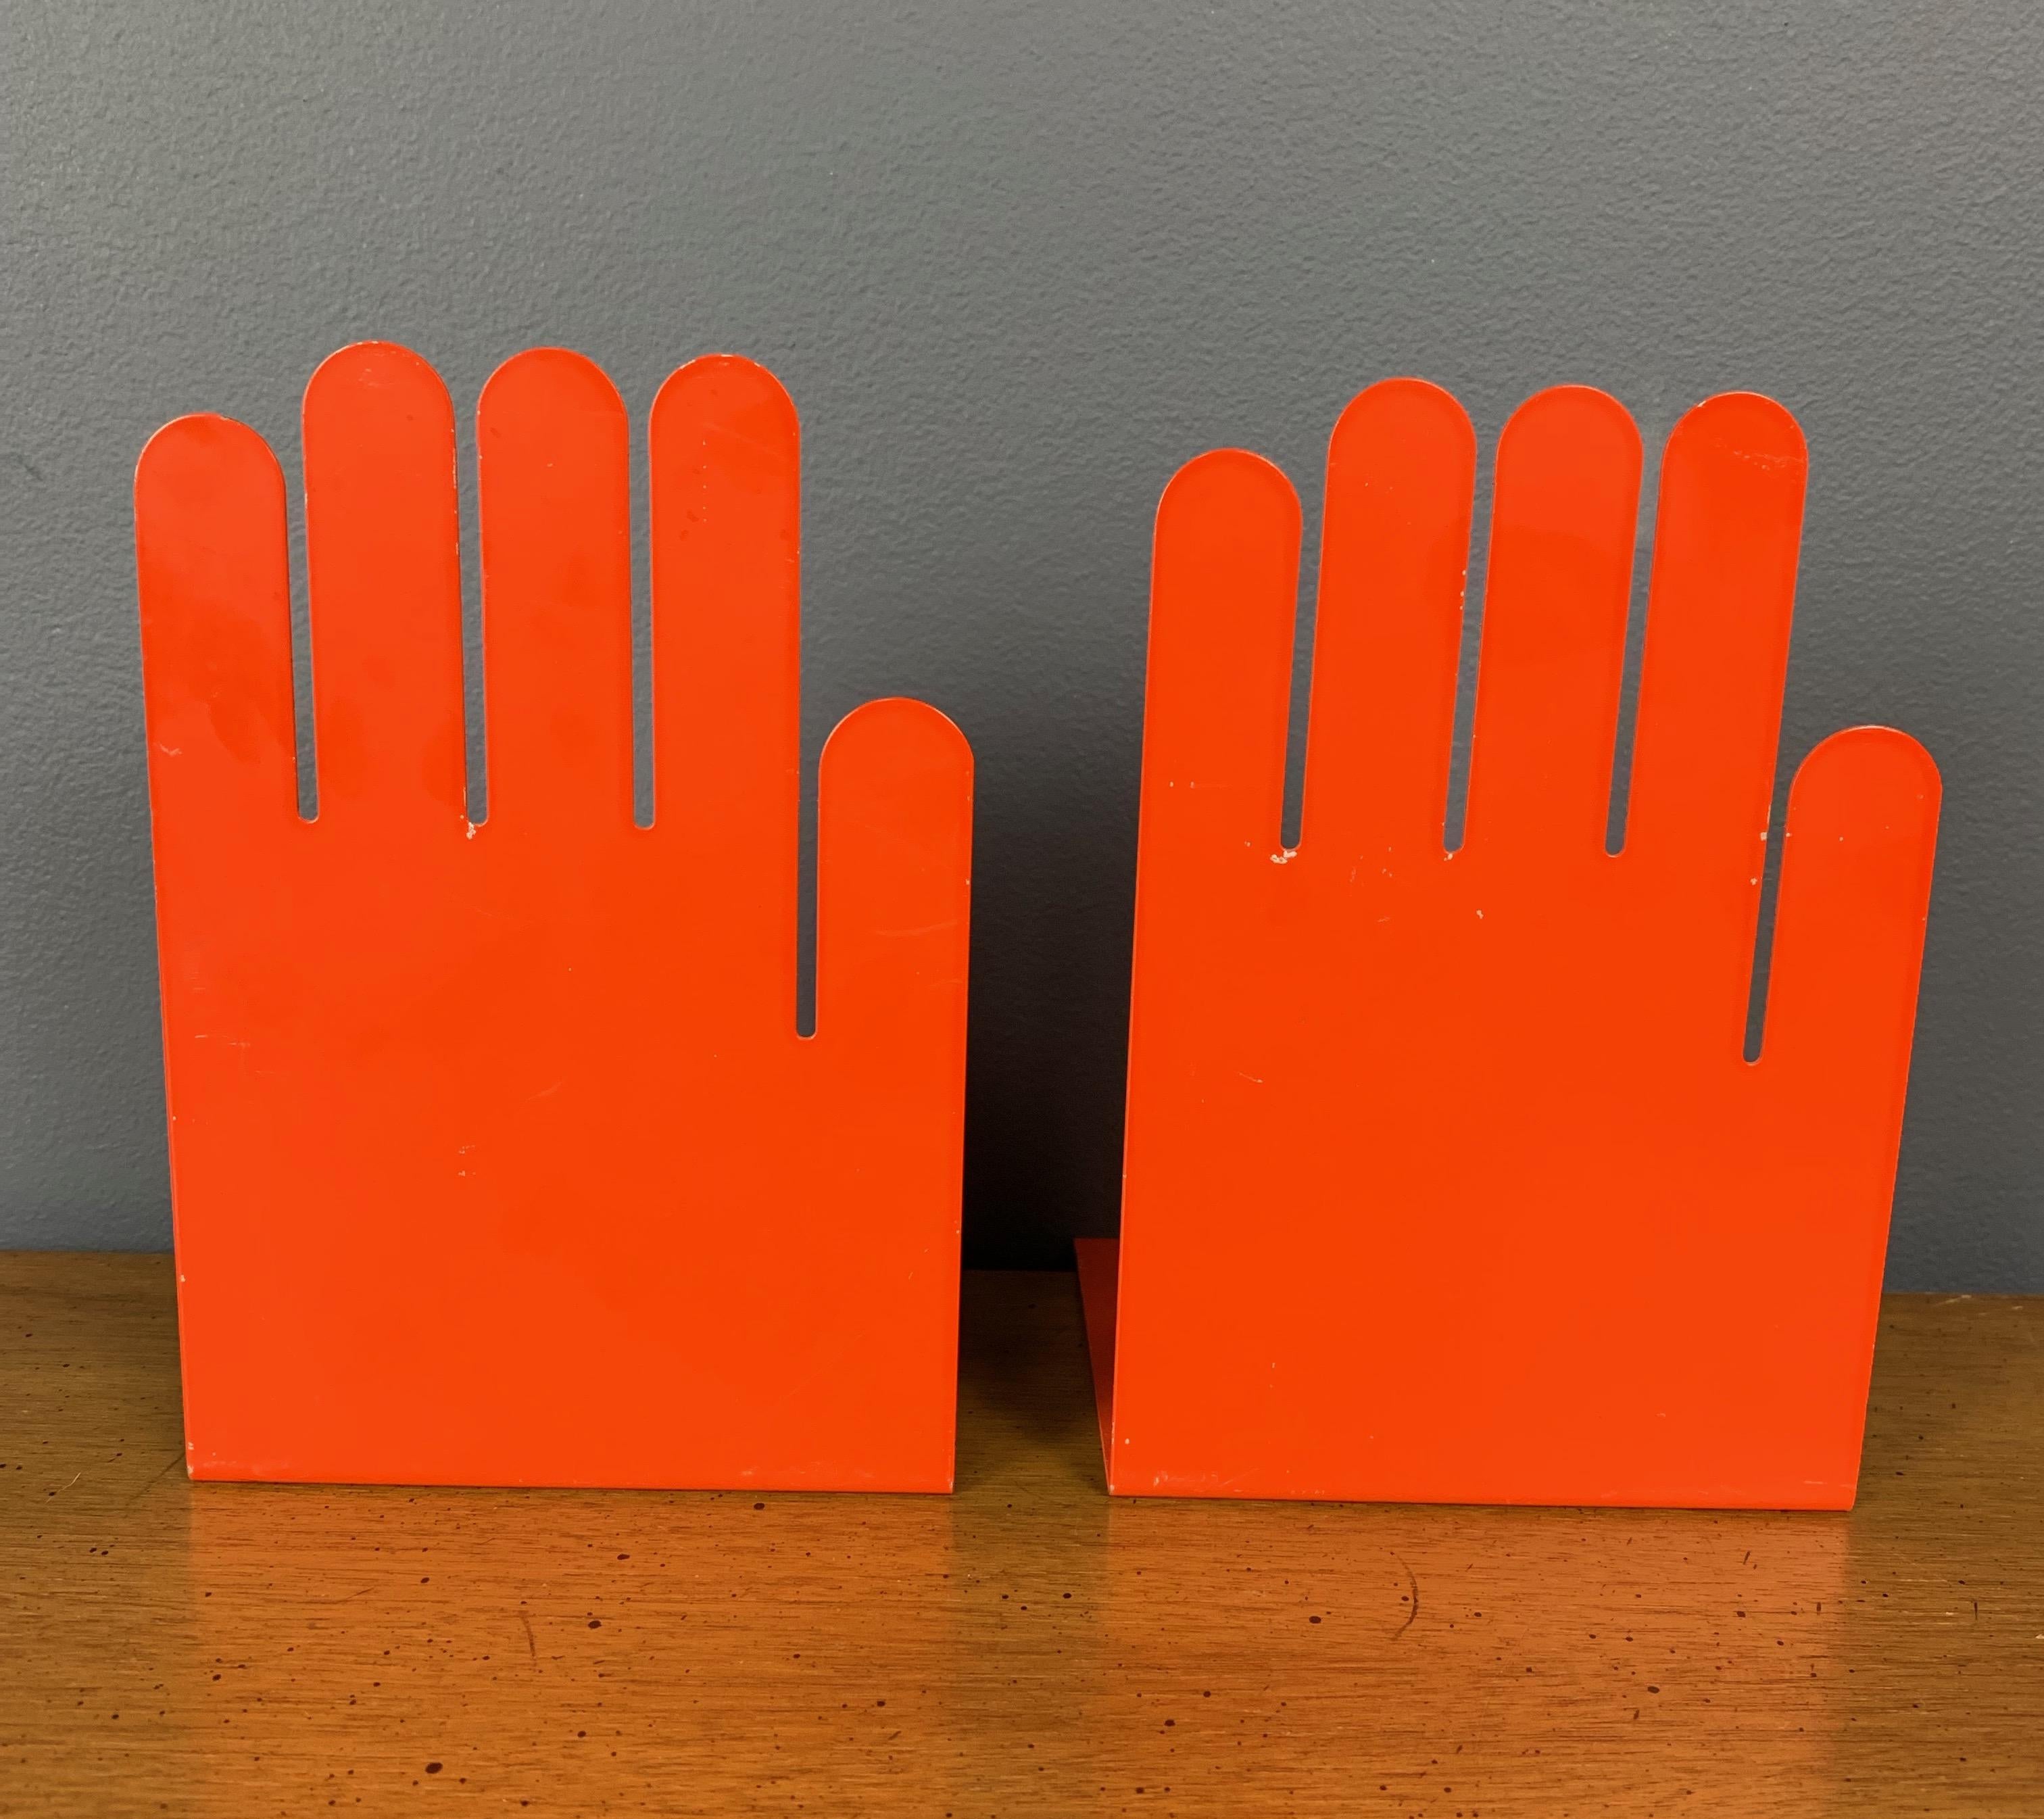 German 1980s Postmodern Orange Hand Bookends, a Pair